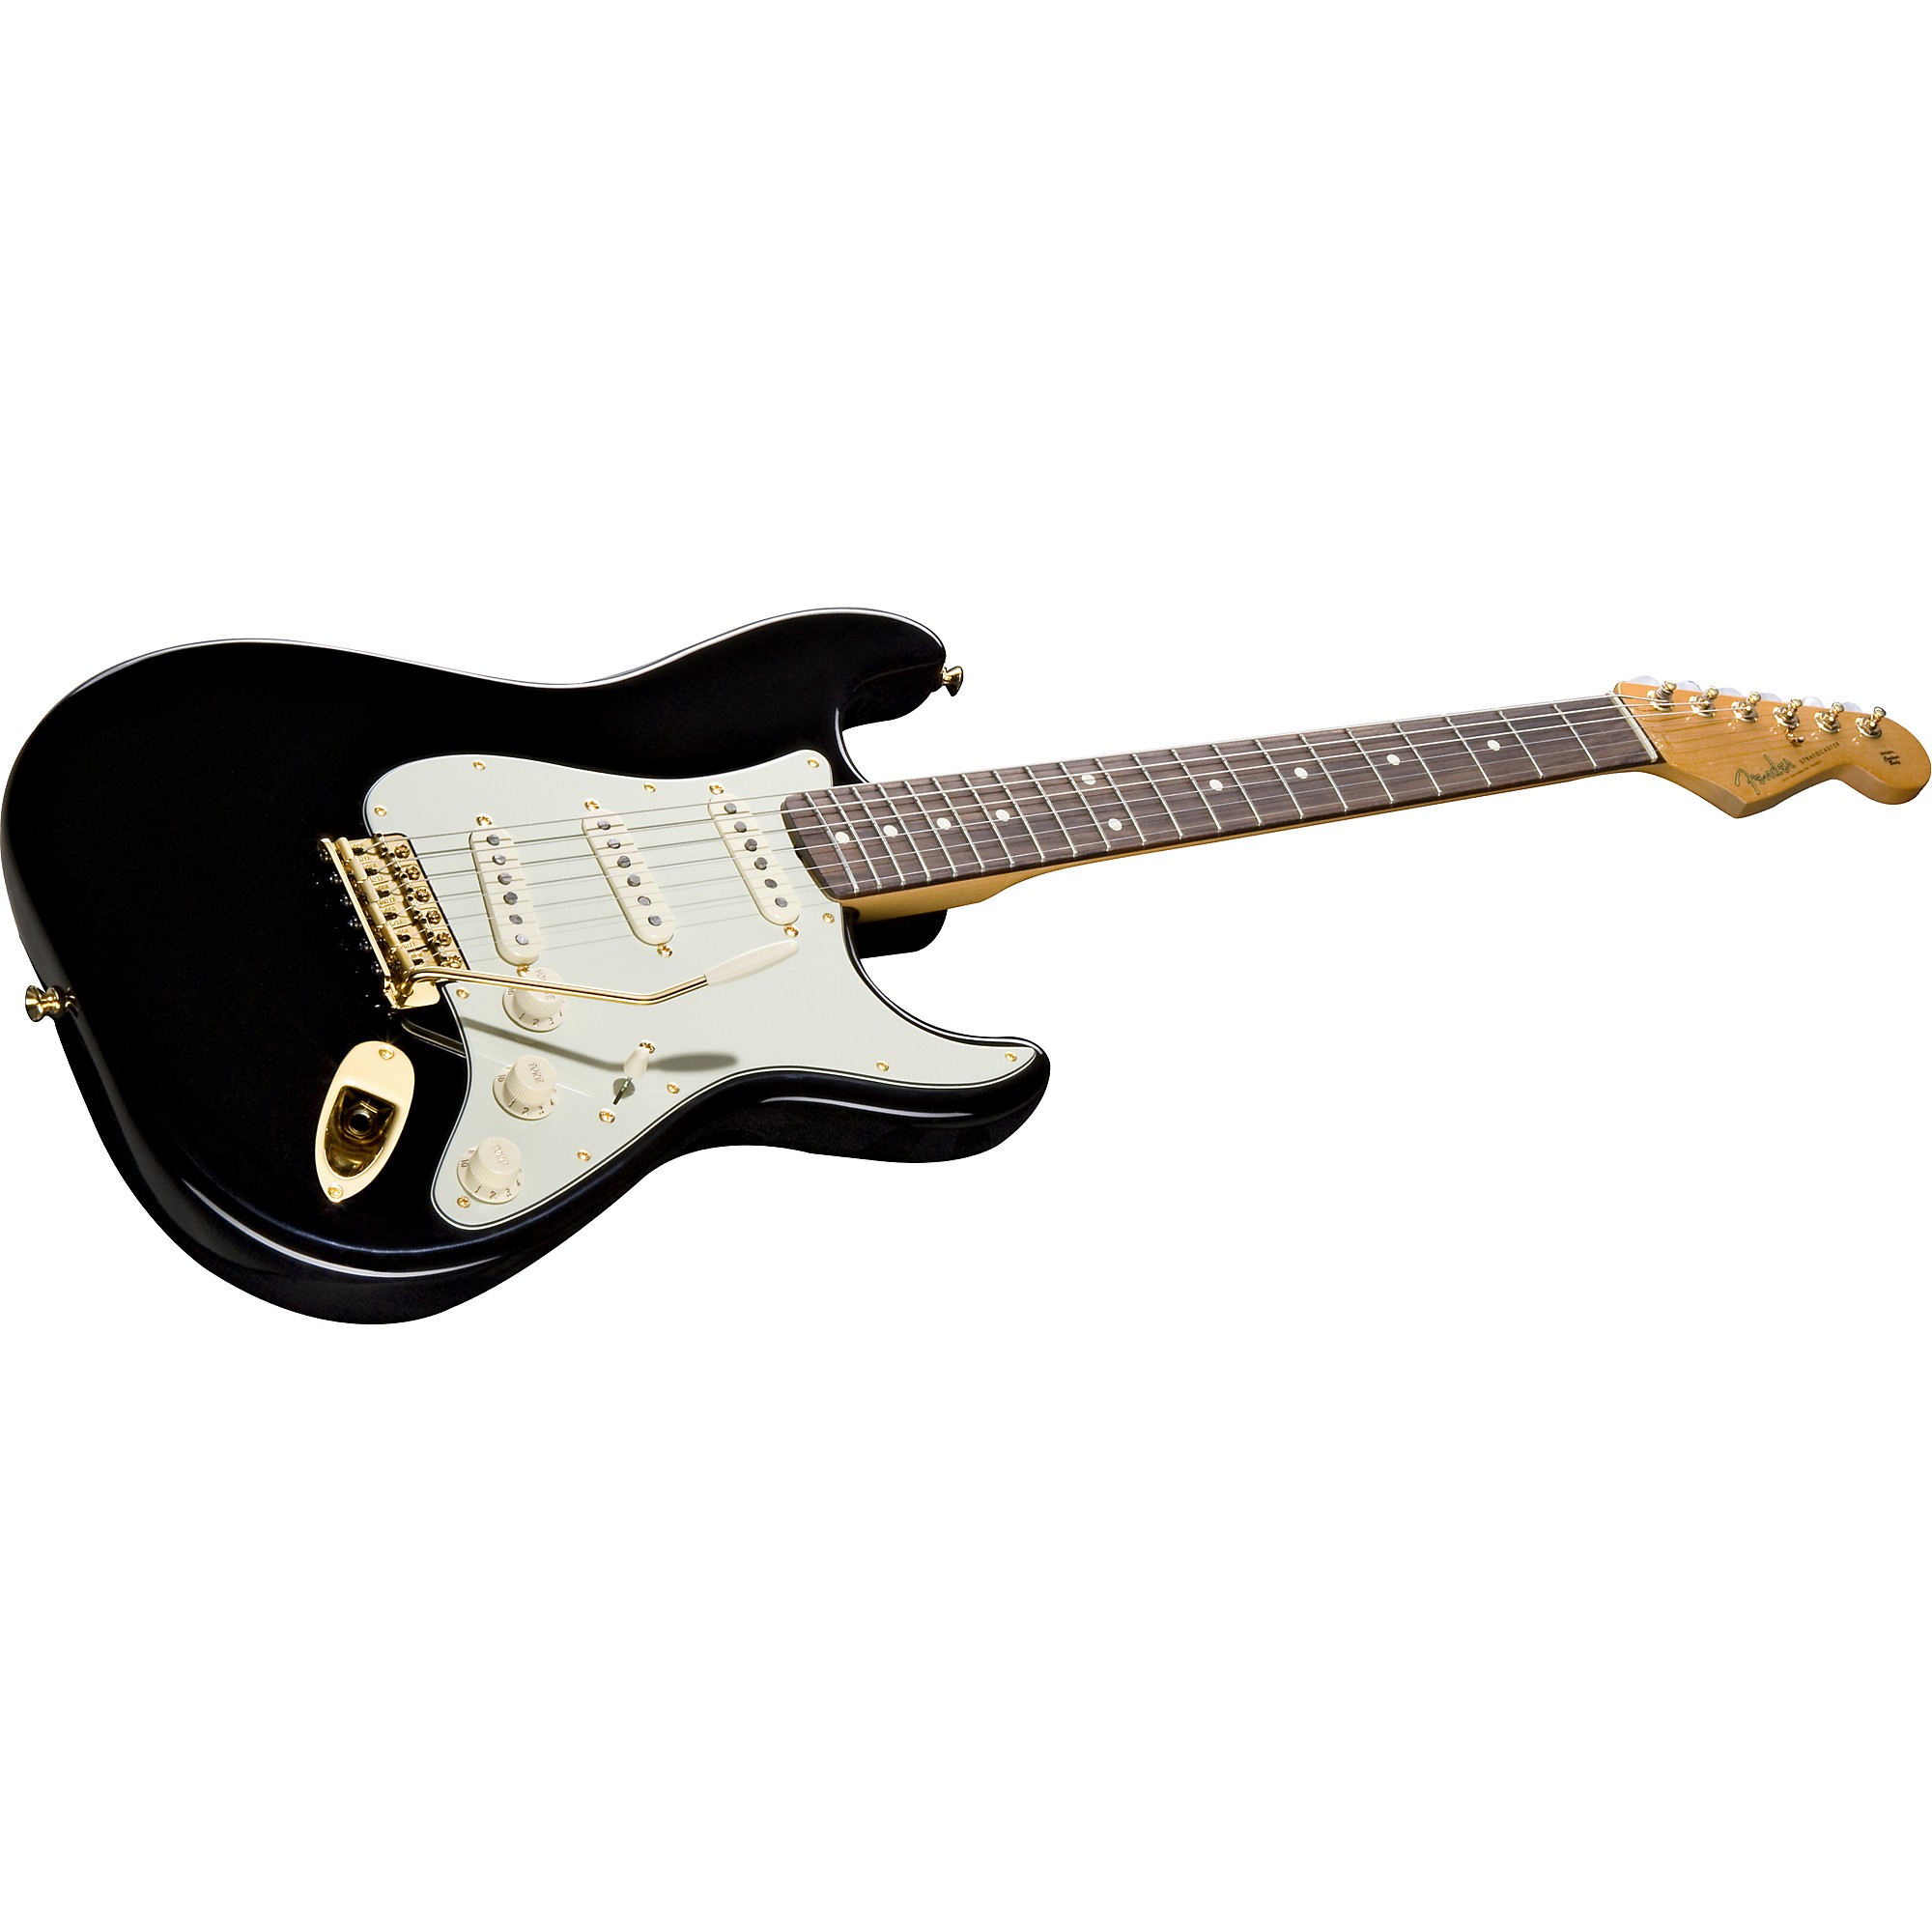 Fender シャーラー ペグ SRV john mayer black one | www ...